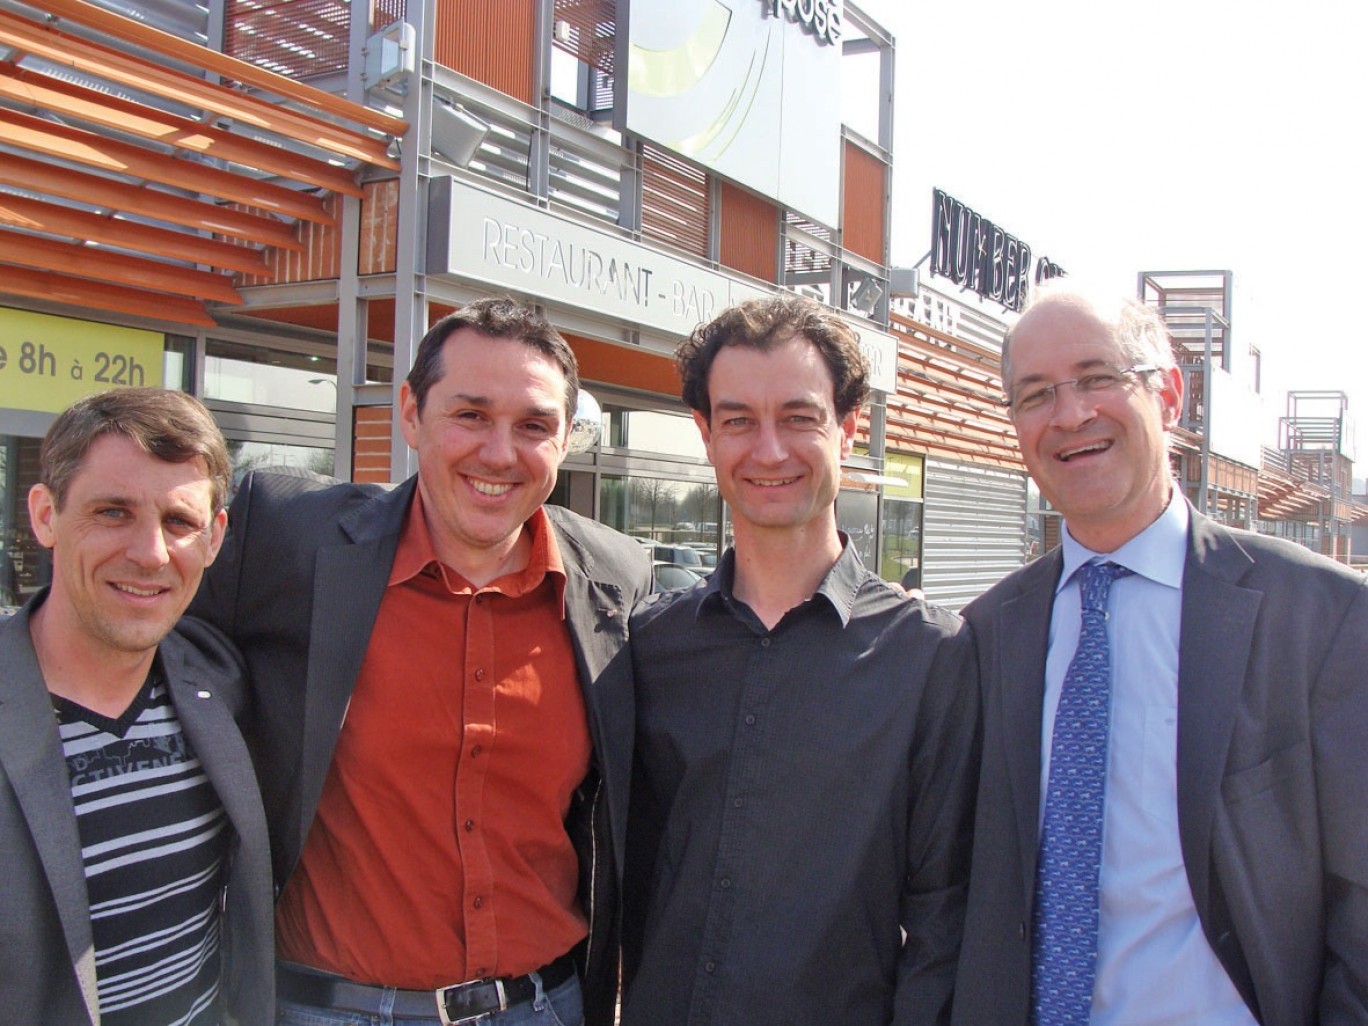 De gauche à droite, Michel Meunier, Didier Dumont, Franck D’Halluin et Xavier Ibled.